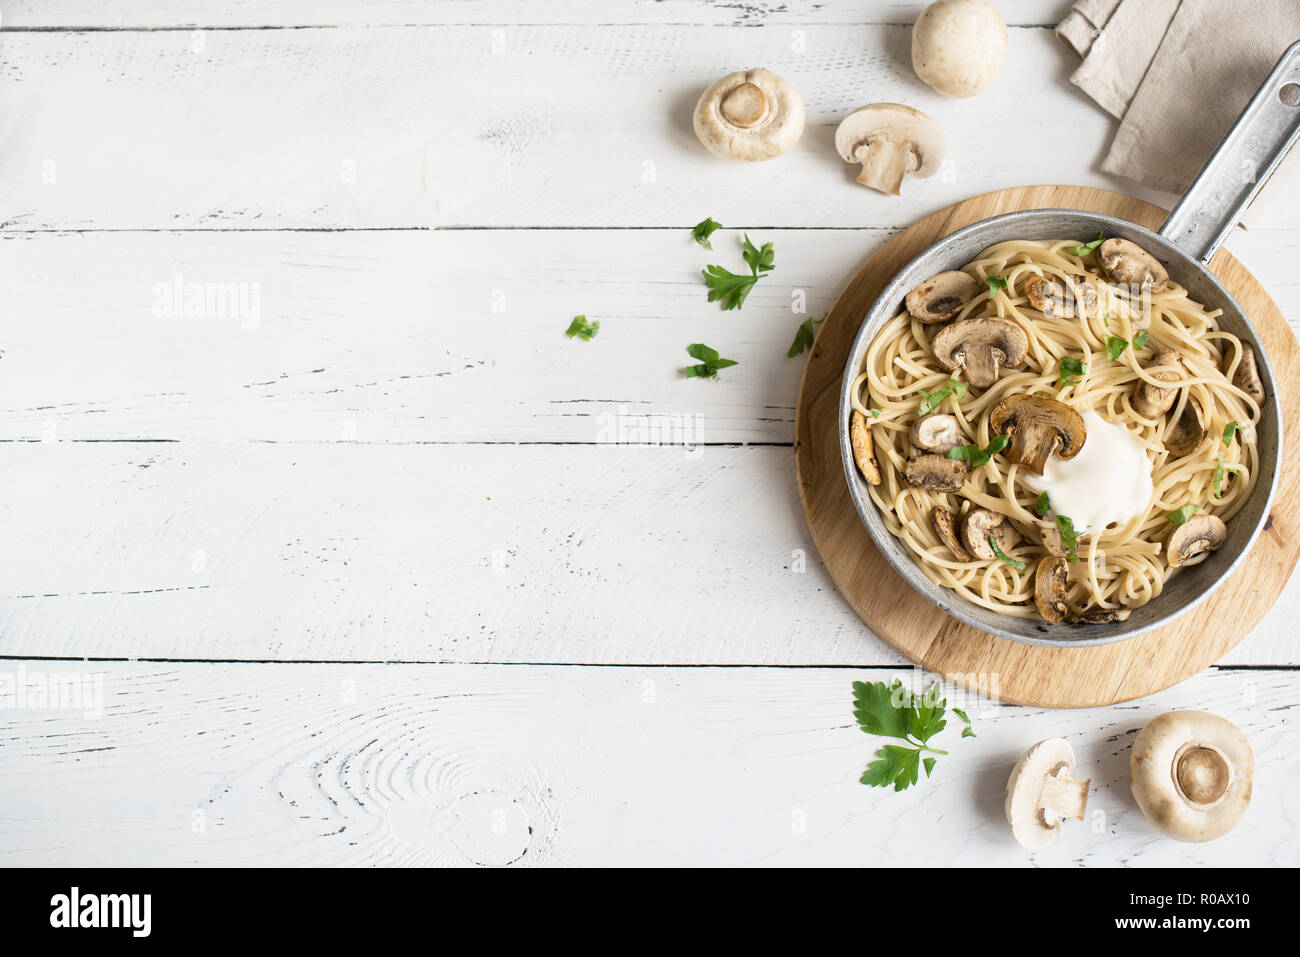 Les pâtes Spaghetti aux champignons et sauce crème sur fond blanc, vue du dessus. Les pâtes italiennes faites maison avec champignon en plat de cuisson. Banque D'Images